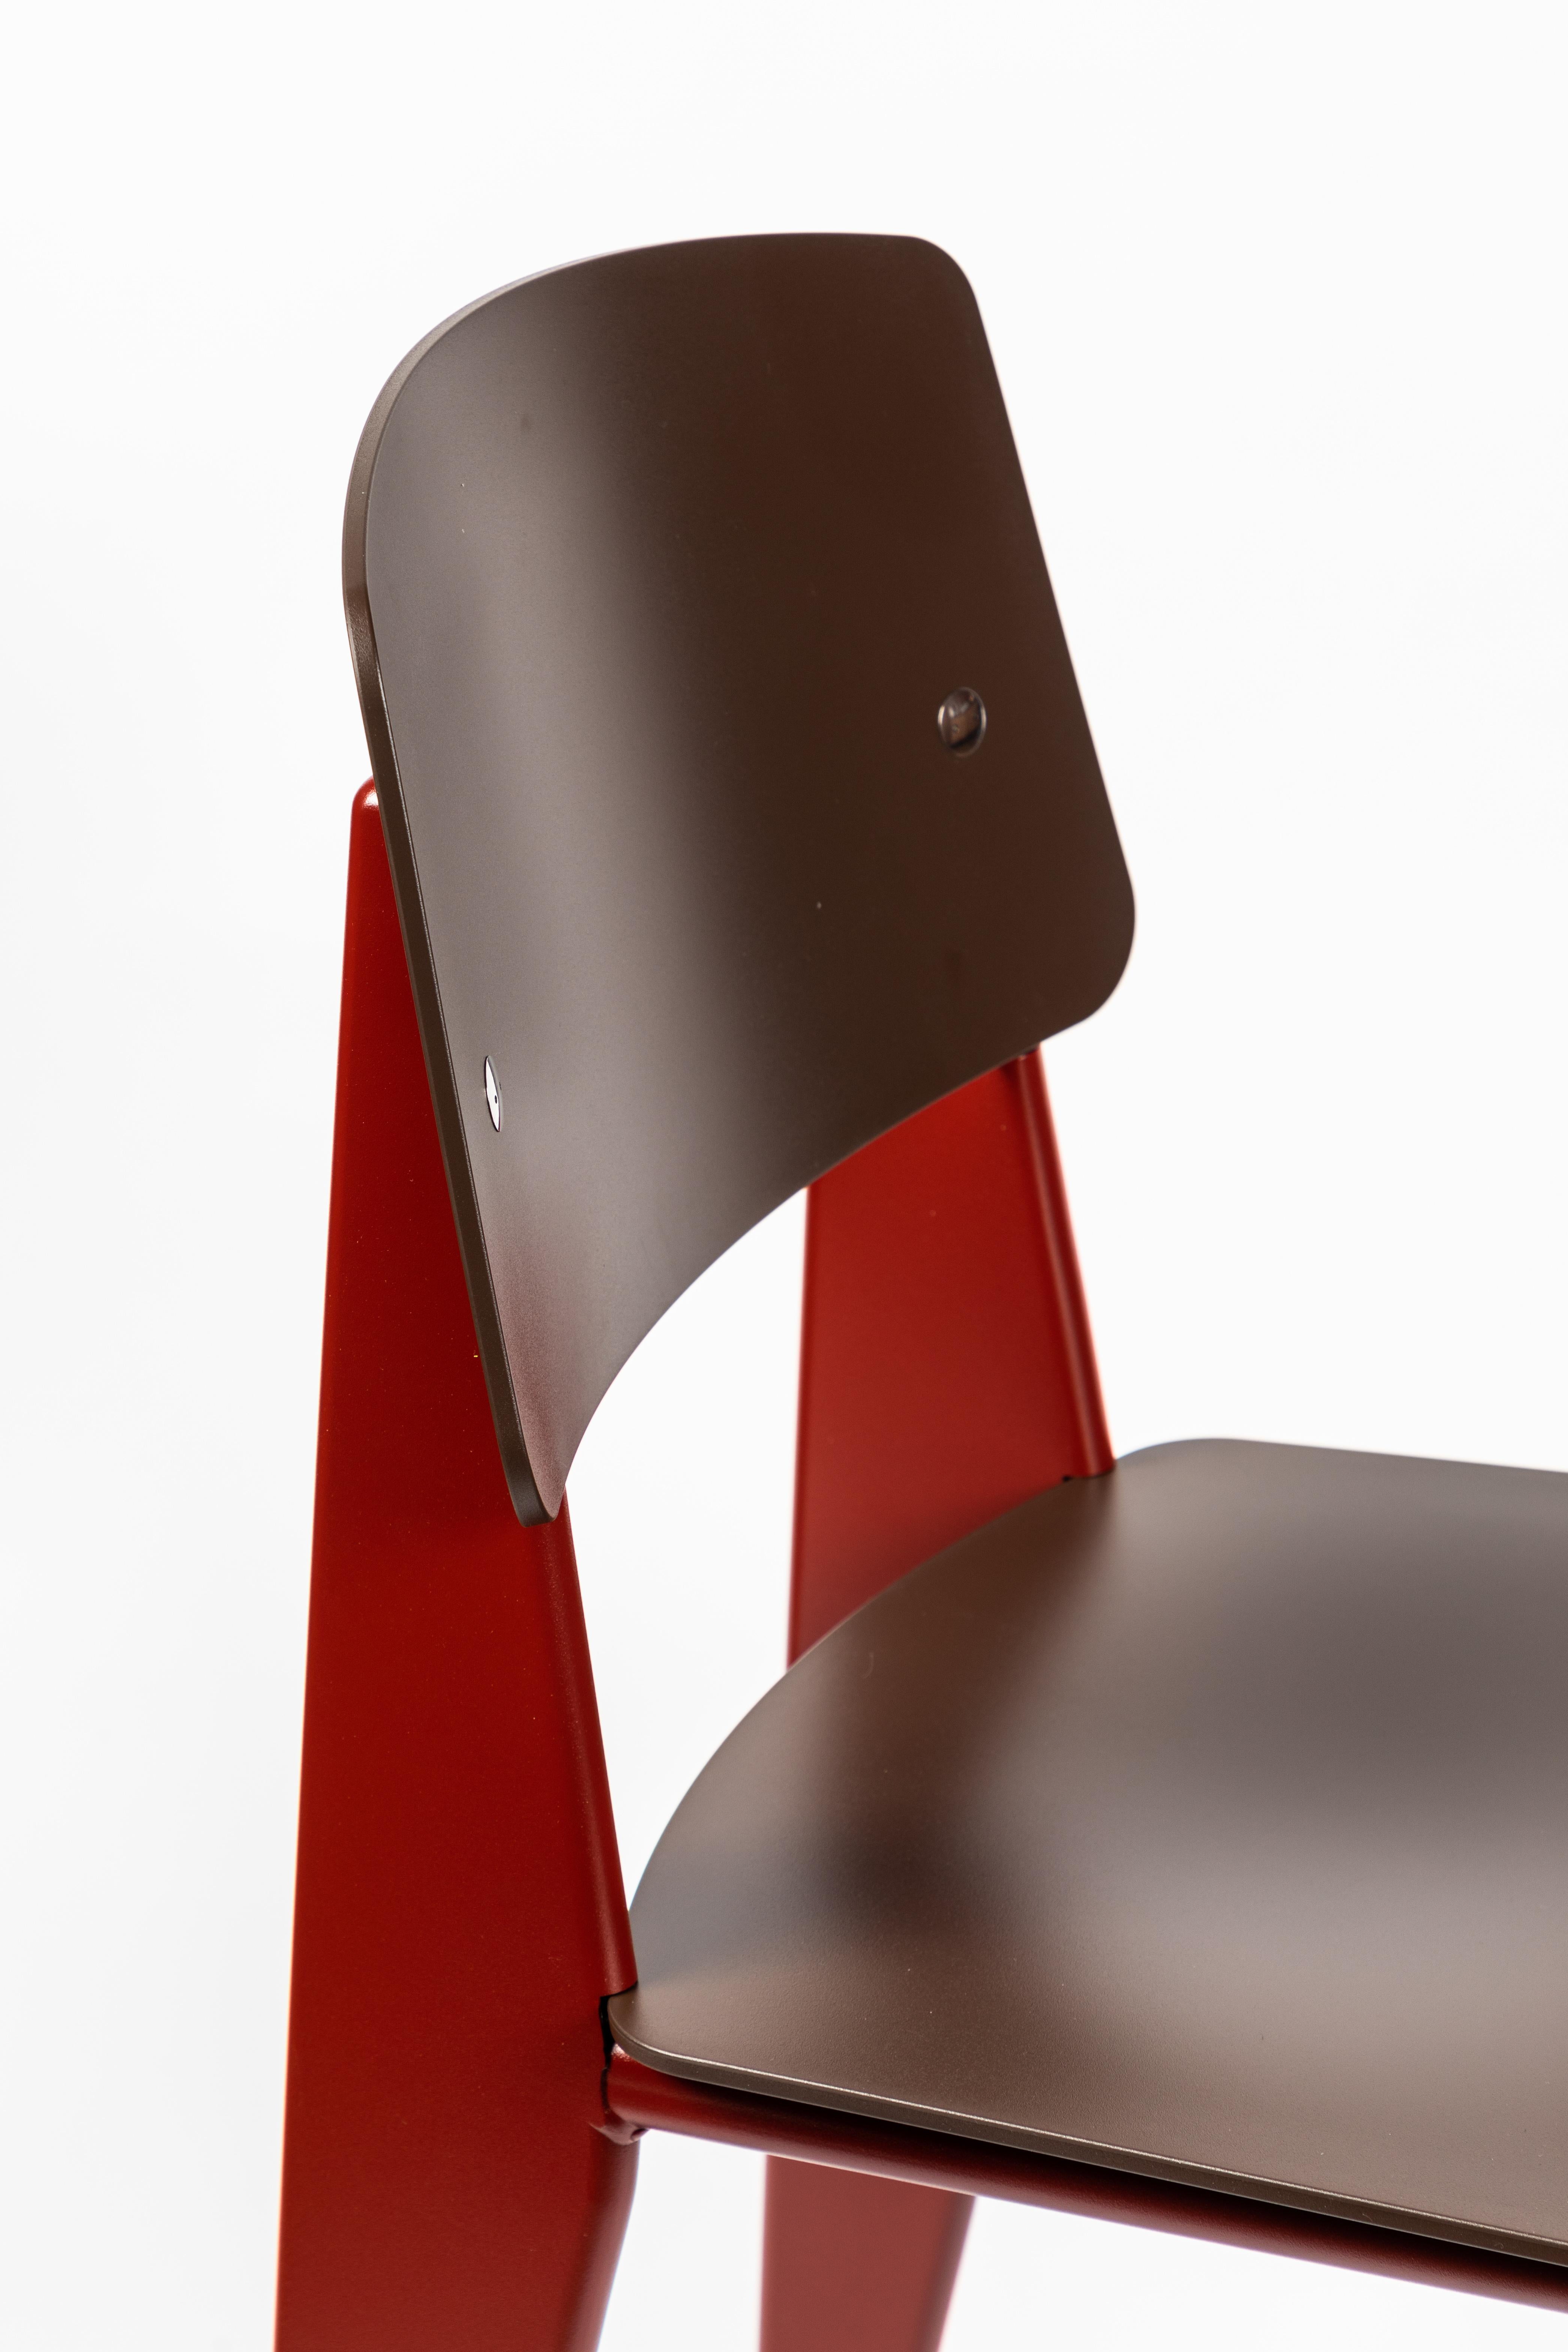 6 Stühle Jean Prouvé Standard SP in Teak Brown und Rot für Vitra 2